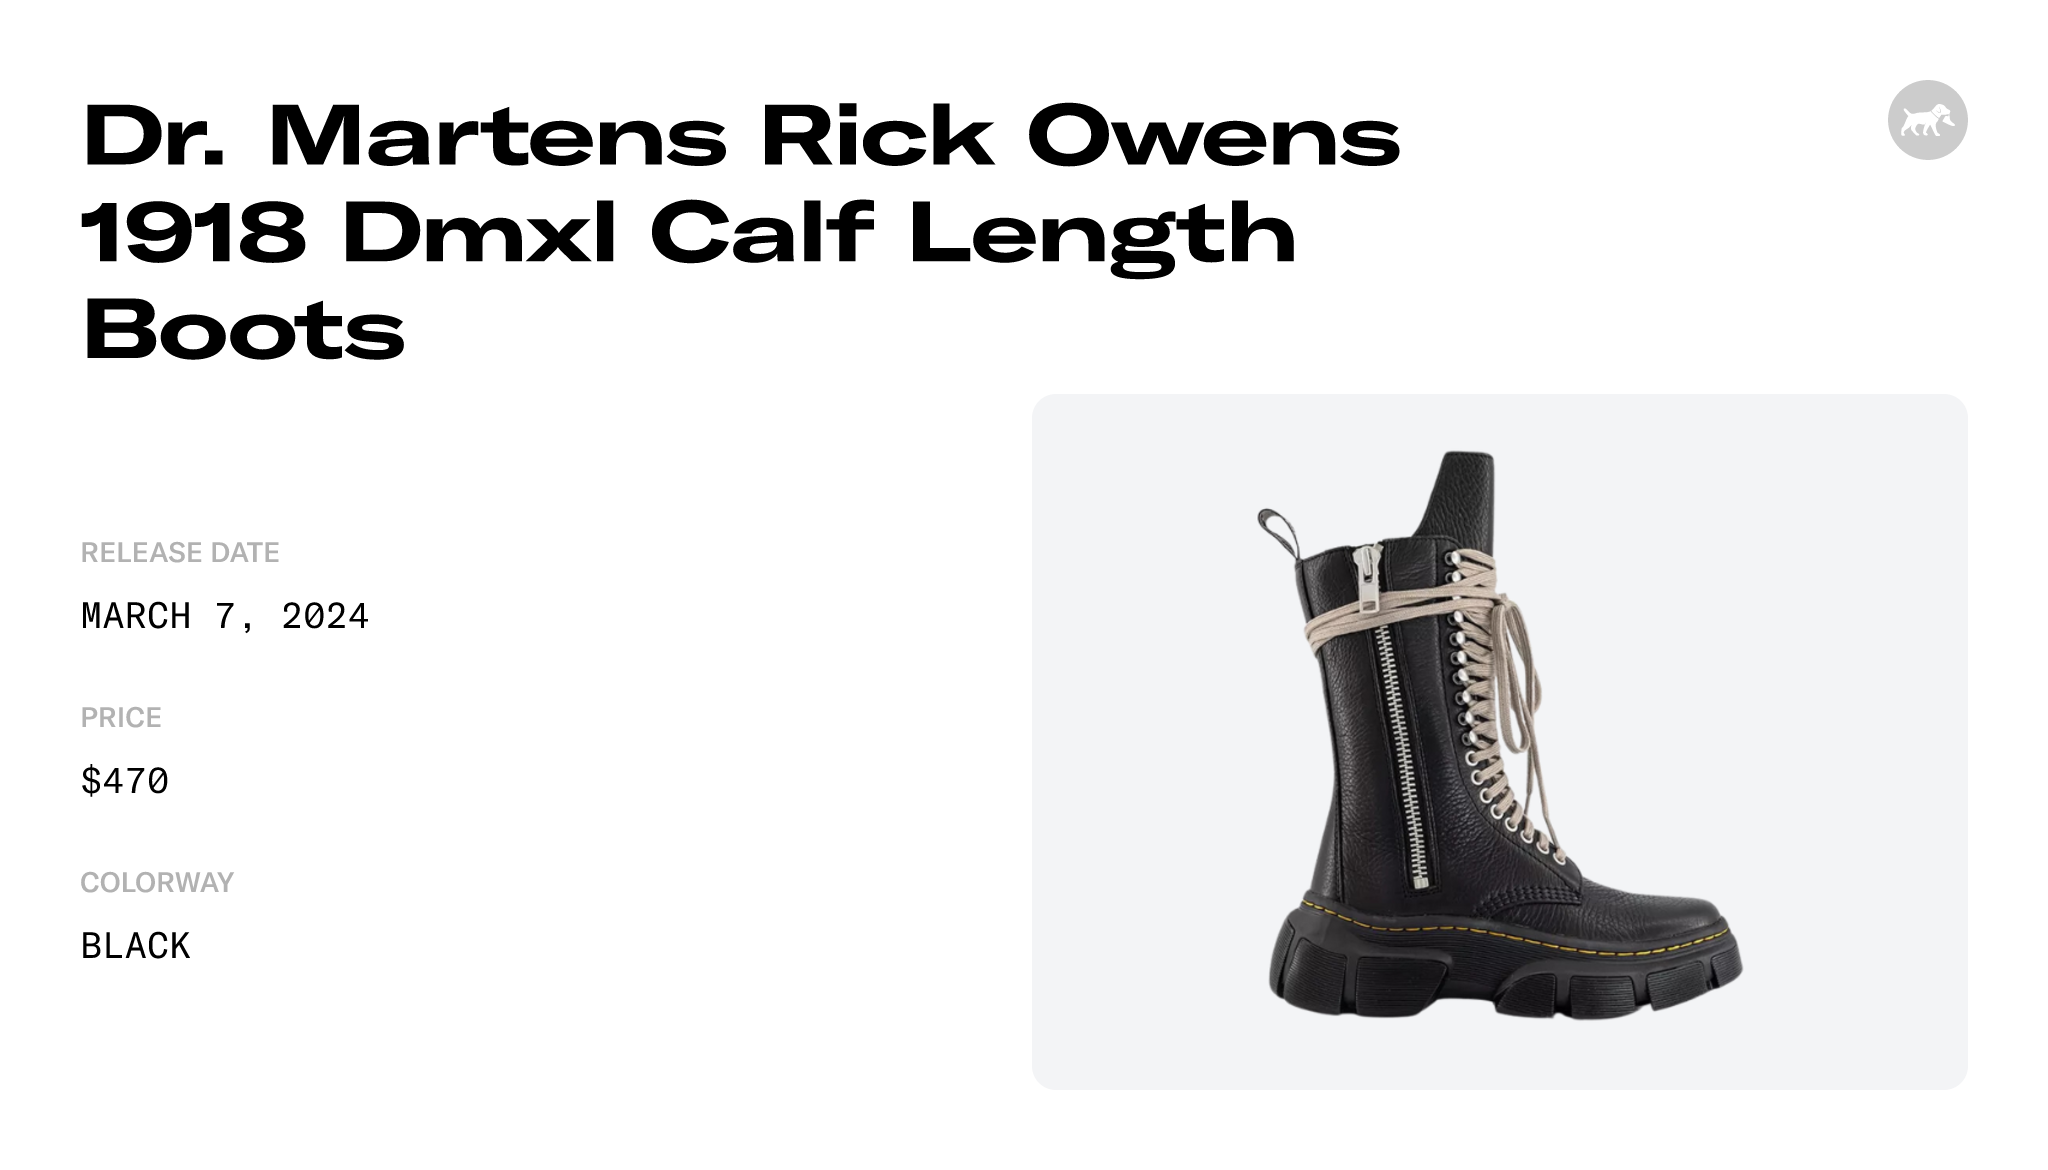 Dr. Martens 1918 Quad Leather Sole Calf Length Boot Rick Owens Black Men's  - DM02B3801 9001 09 - US